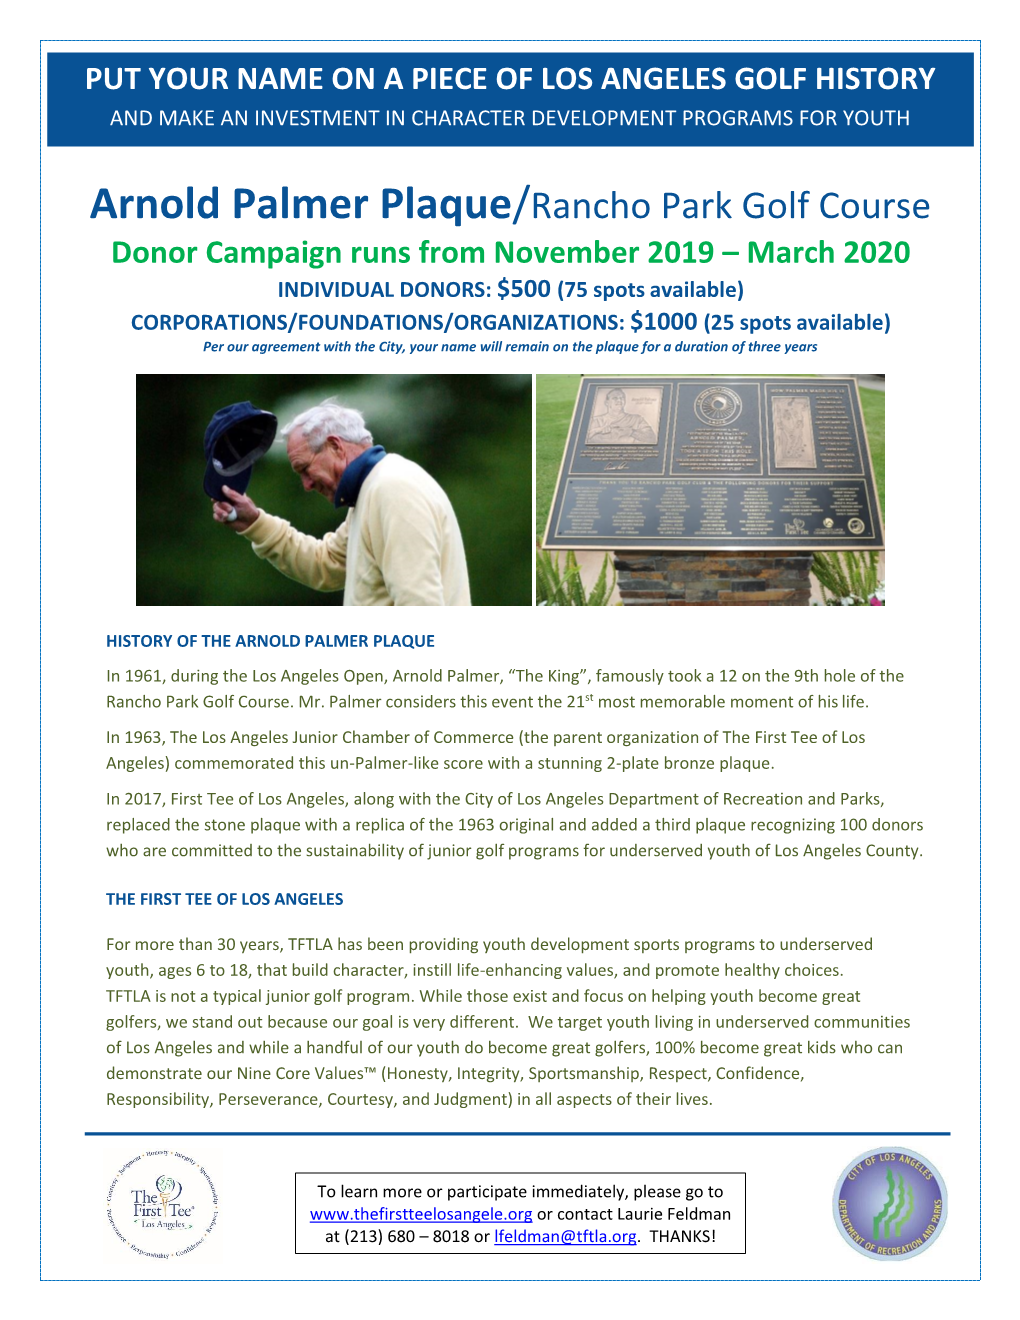 Arnold Palmer Plaque/Rancho Park Golf Course